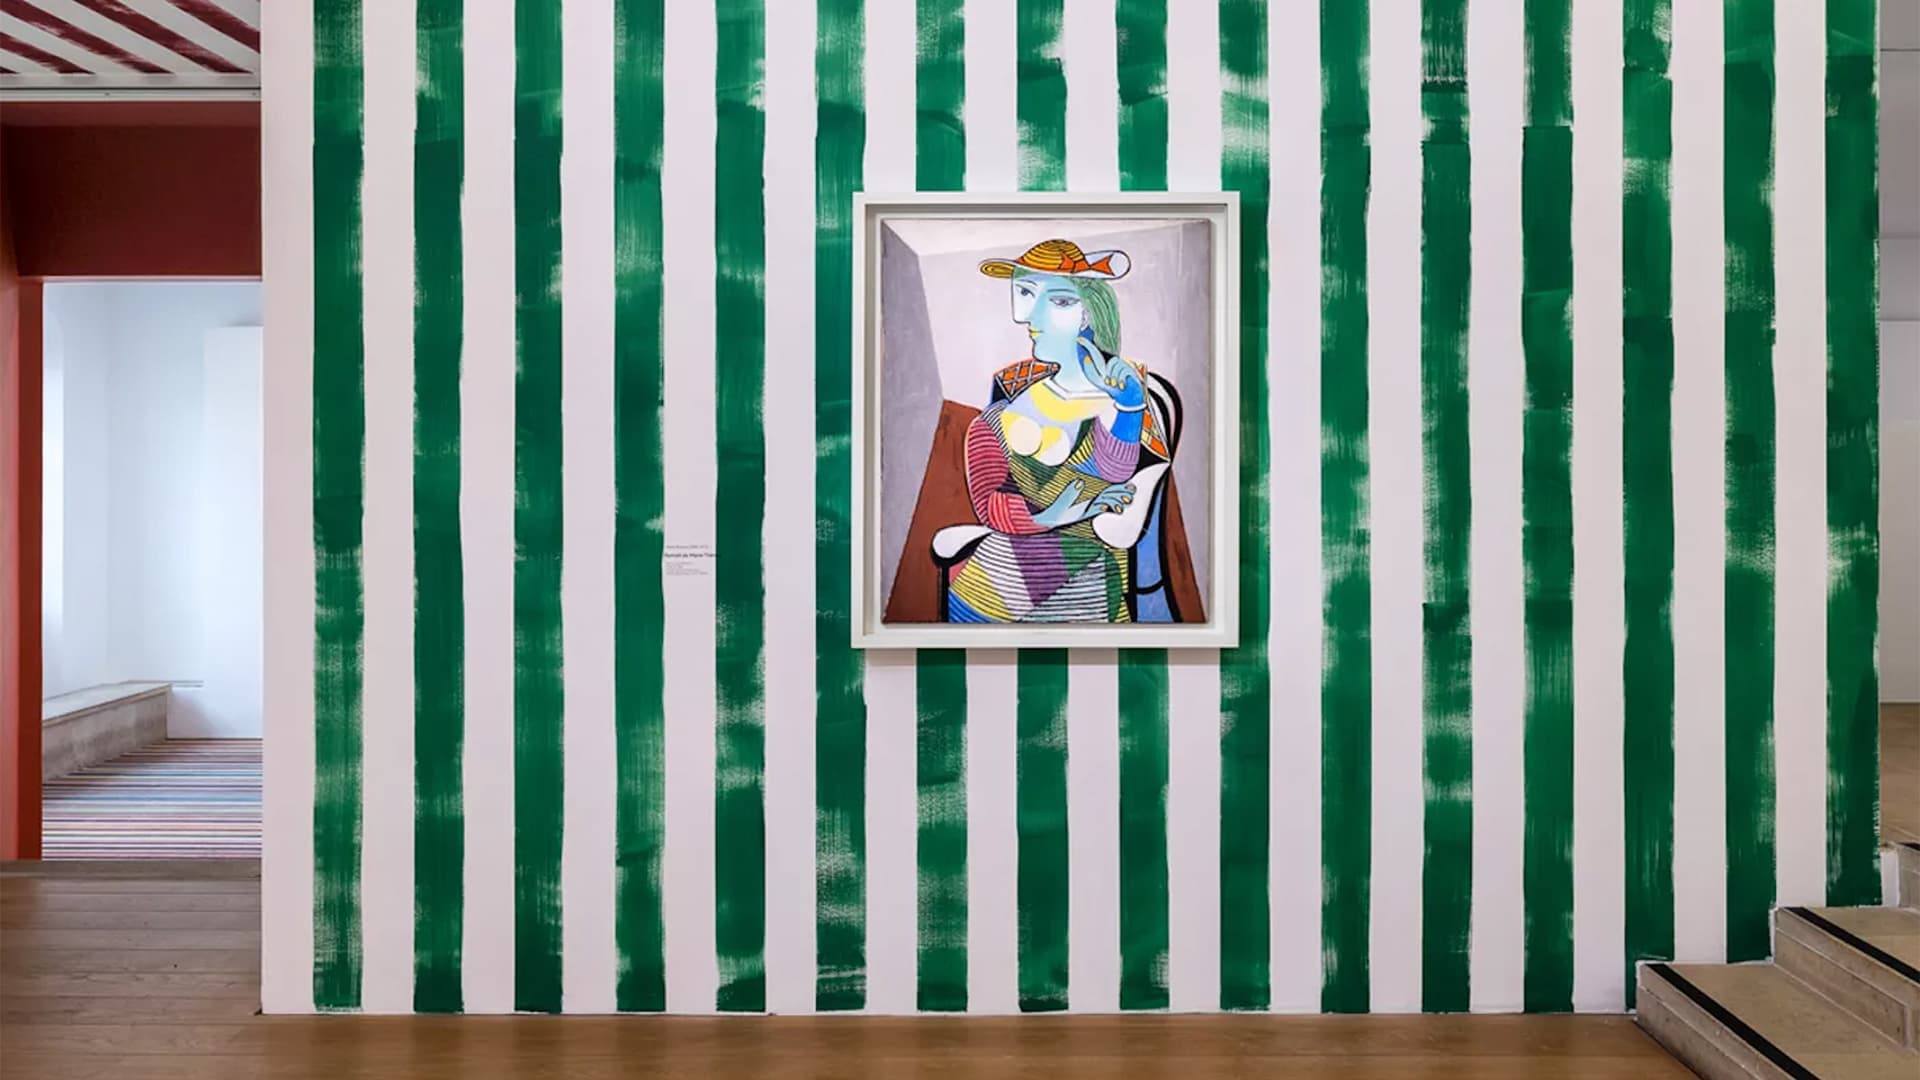 Дизайн, обрамляющий искусство: сценография Пола Смита к выставке Пабло Пикассо в Париже